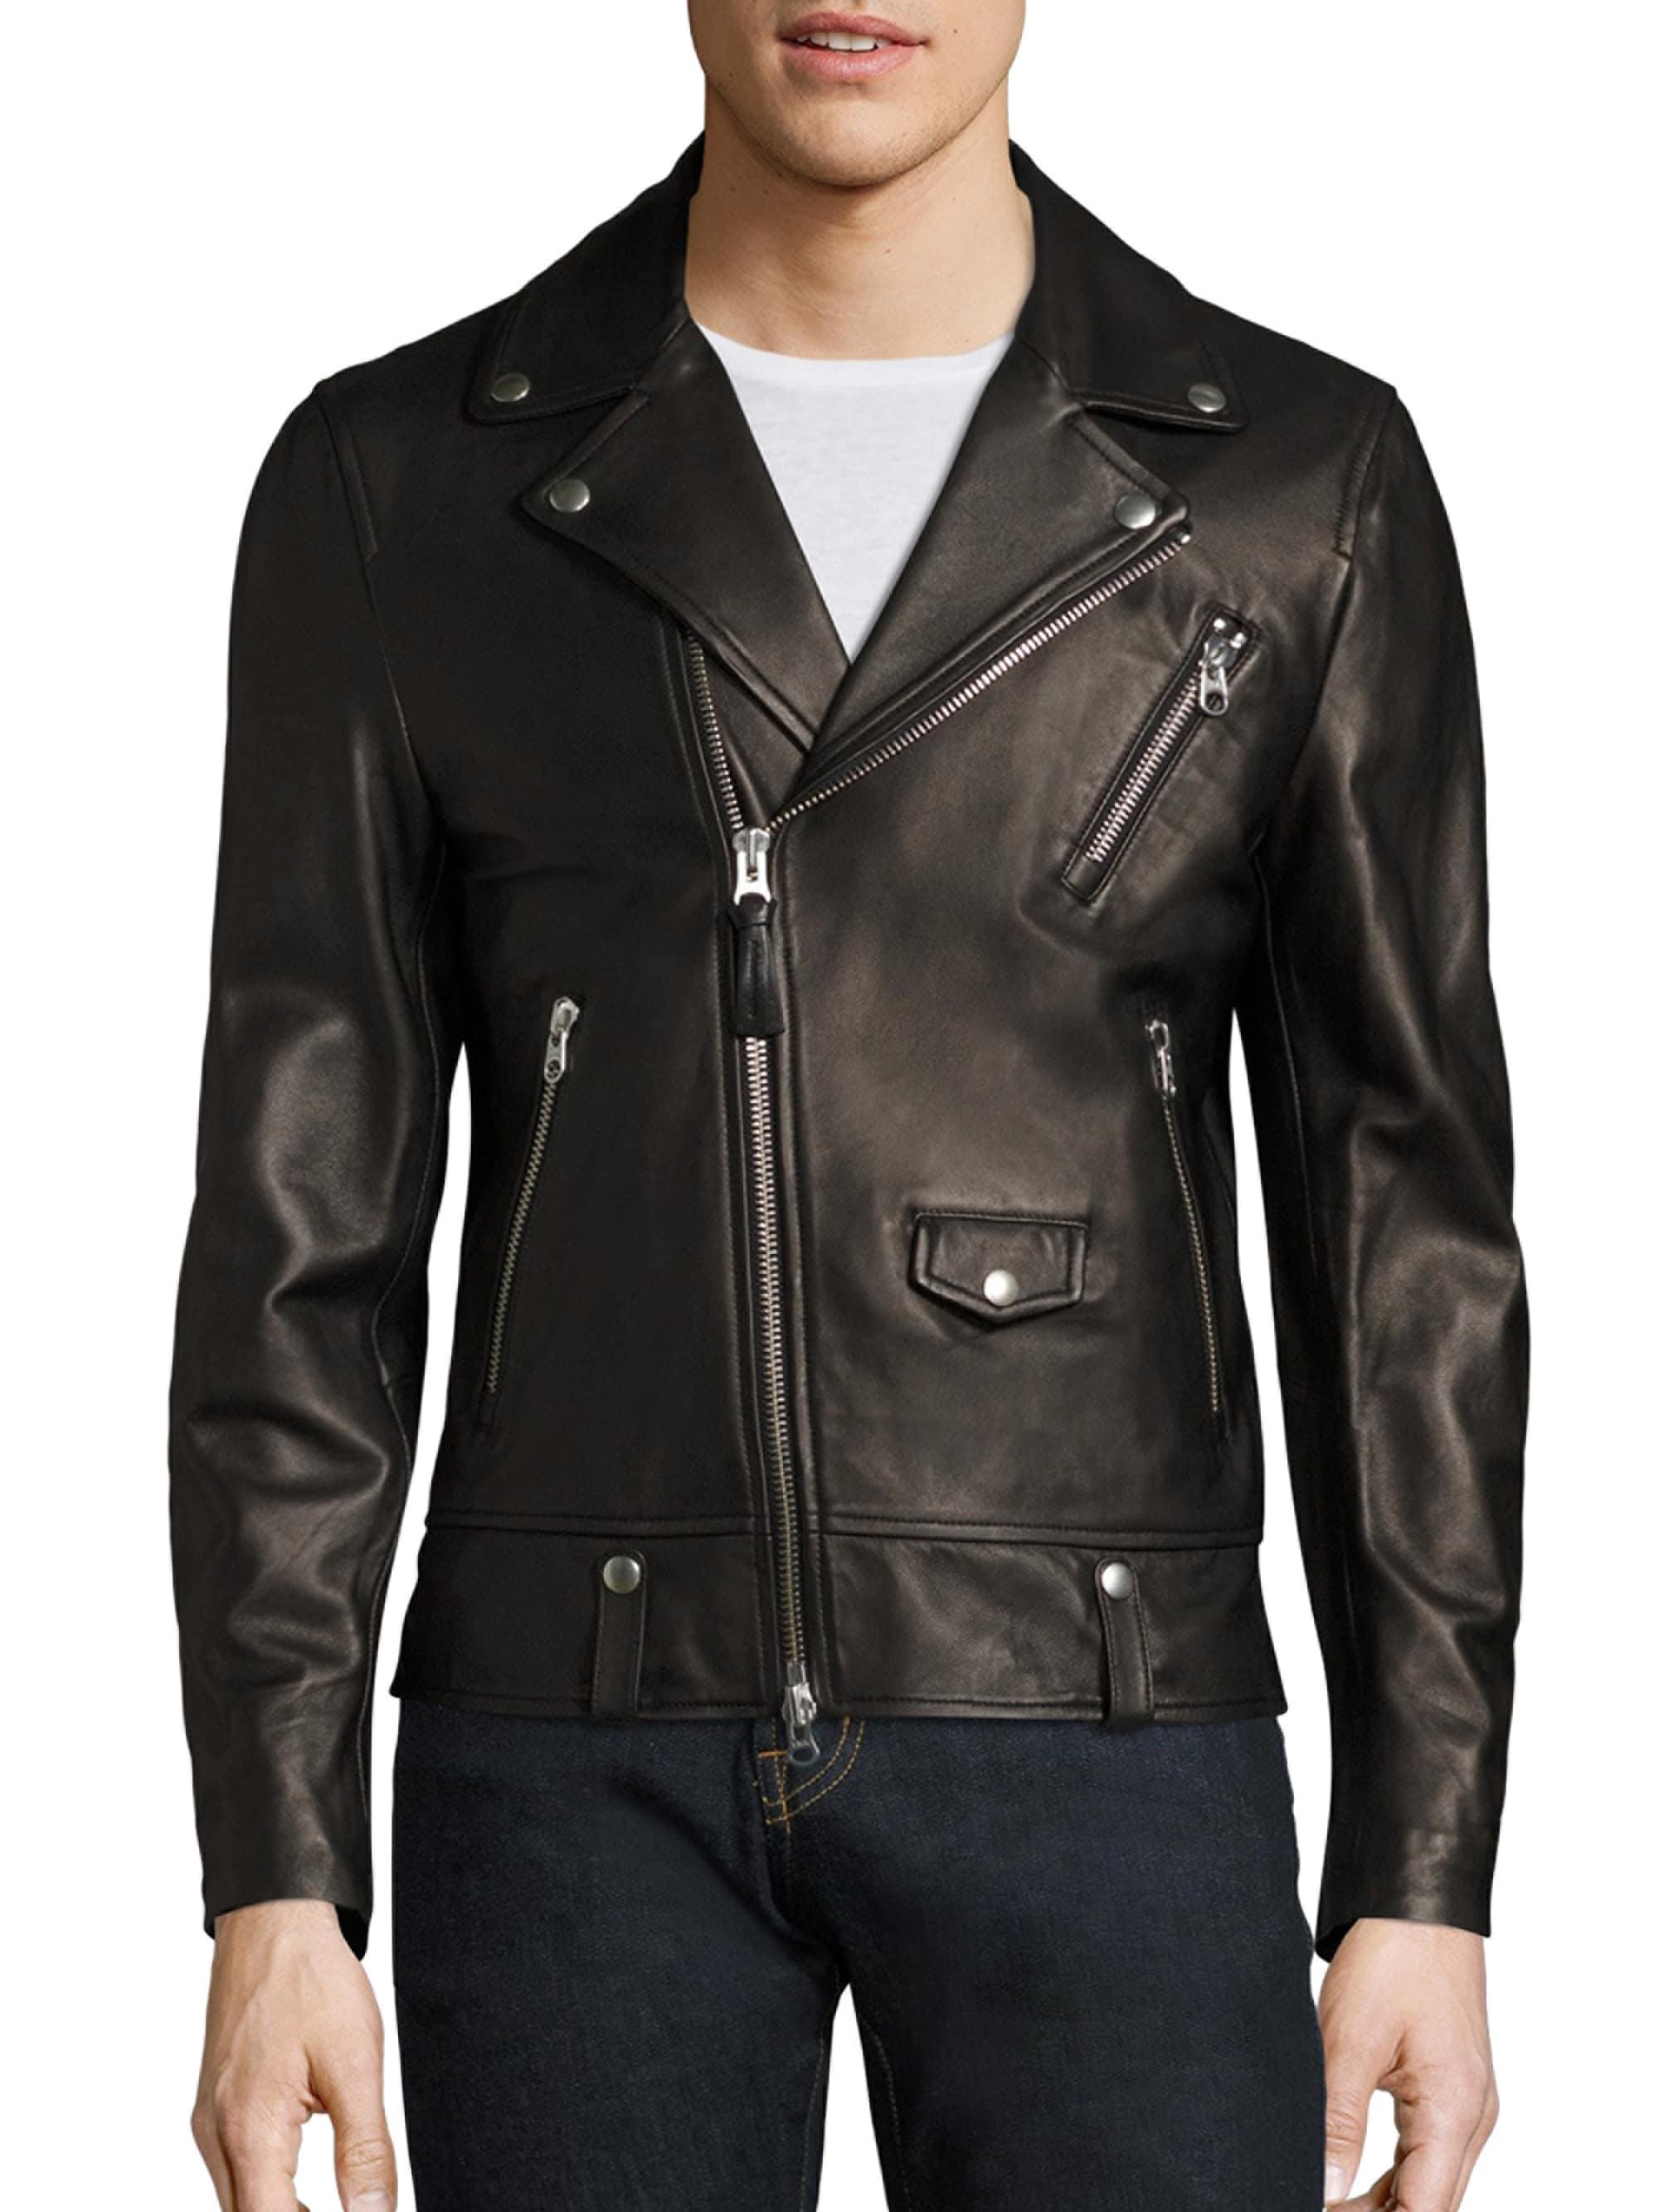 Mackage Fenton Leather Moto Jacket in Black for Men - Lyst